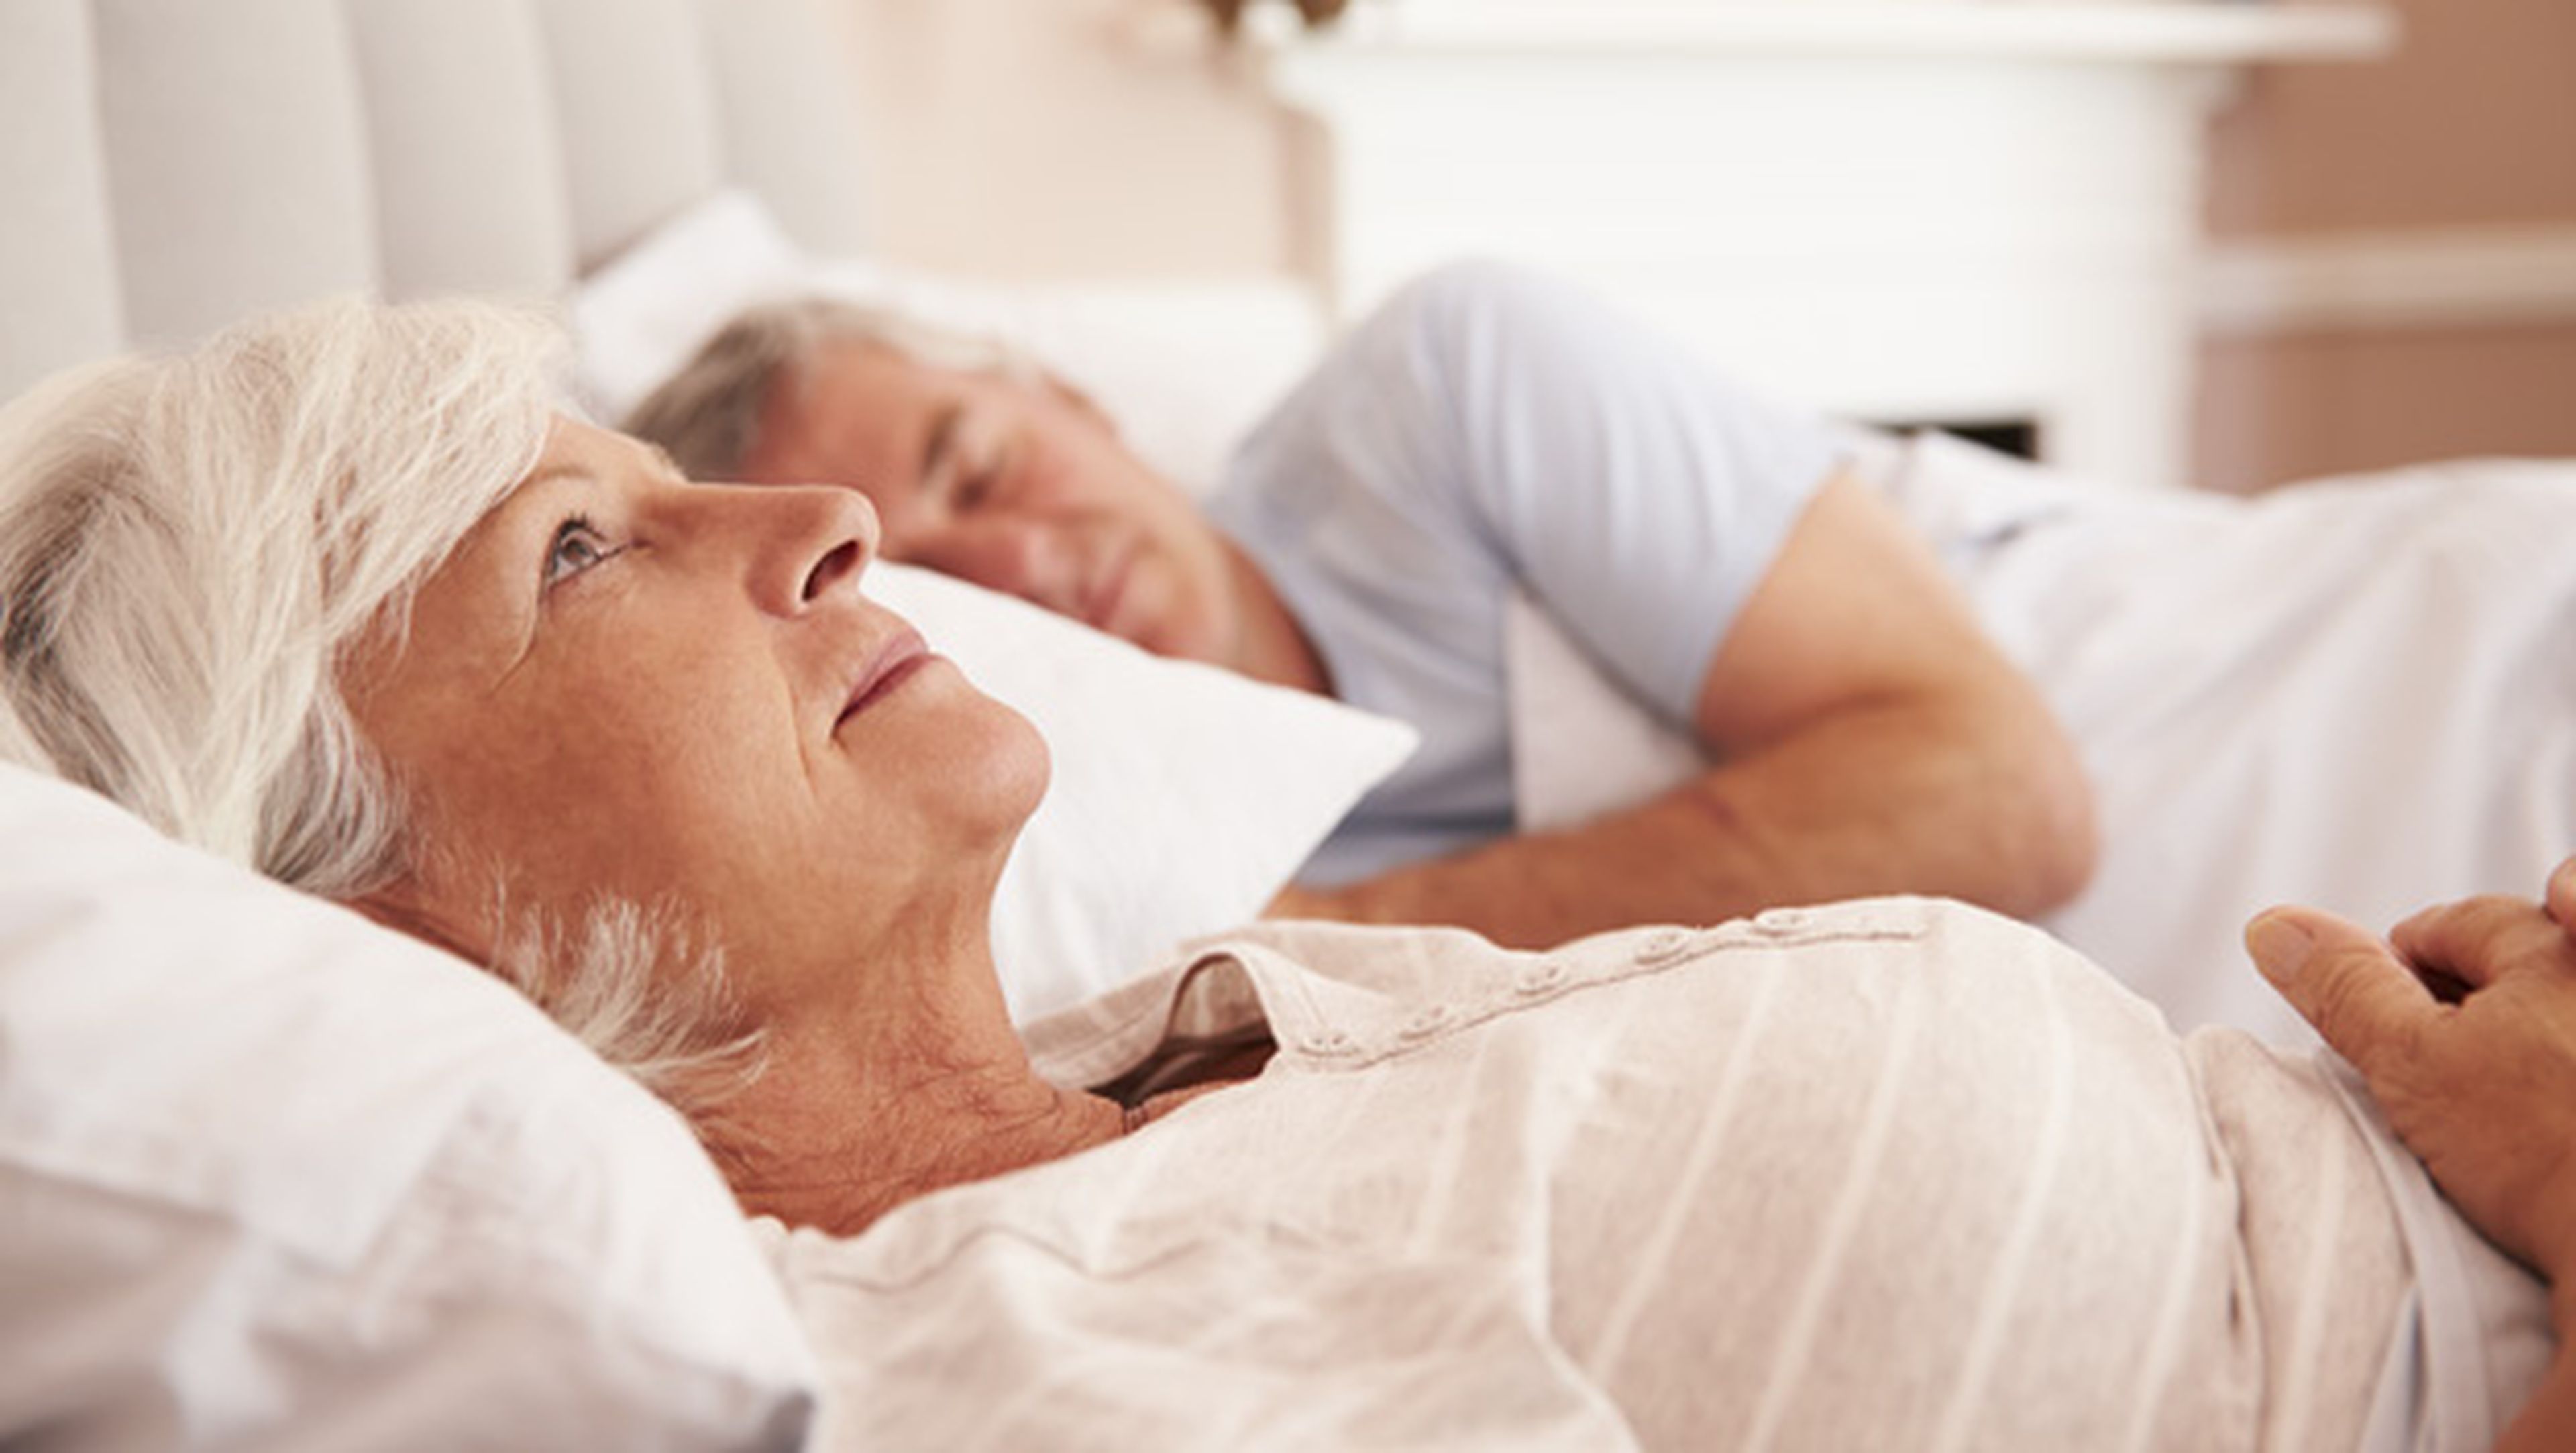 dormir mal aumenta riesgo Alzheimer